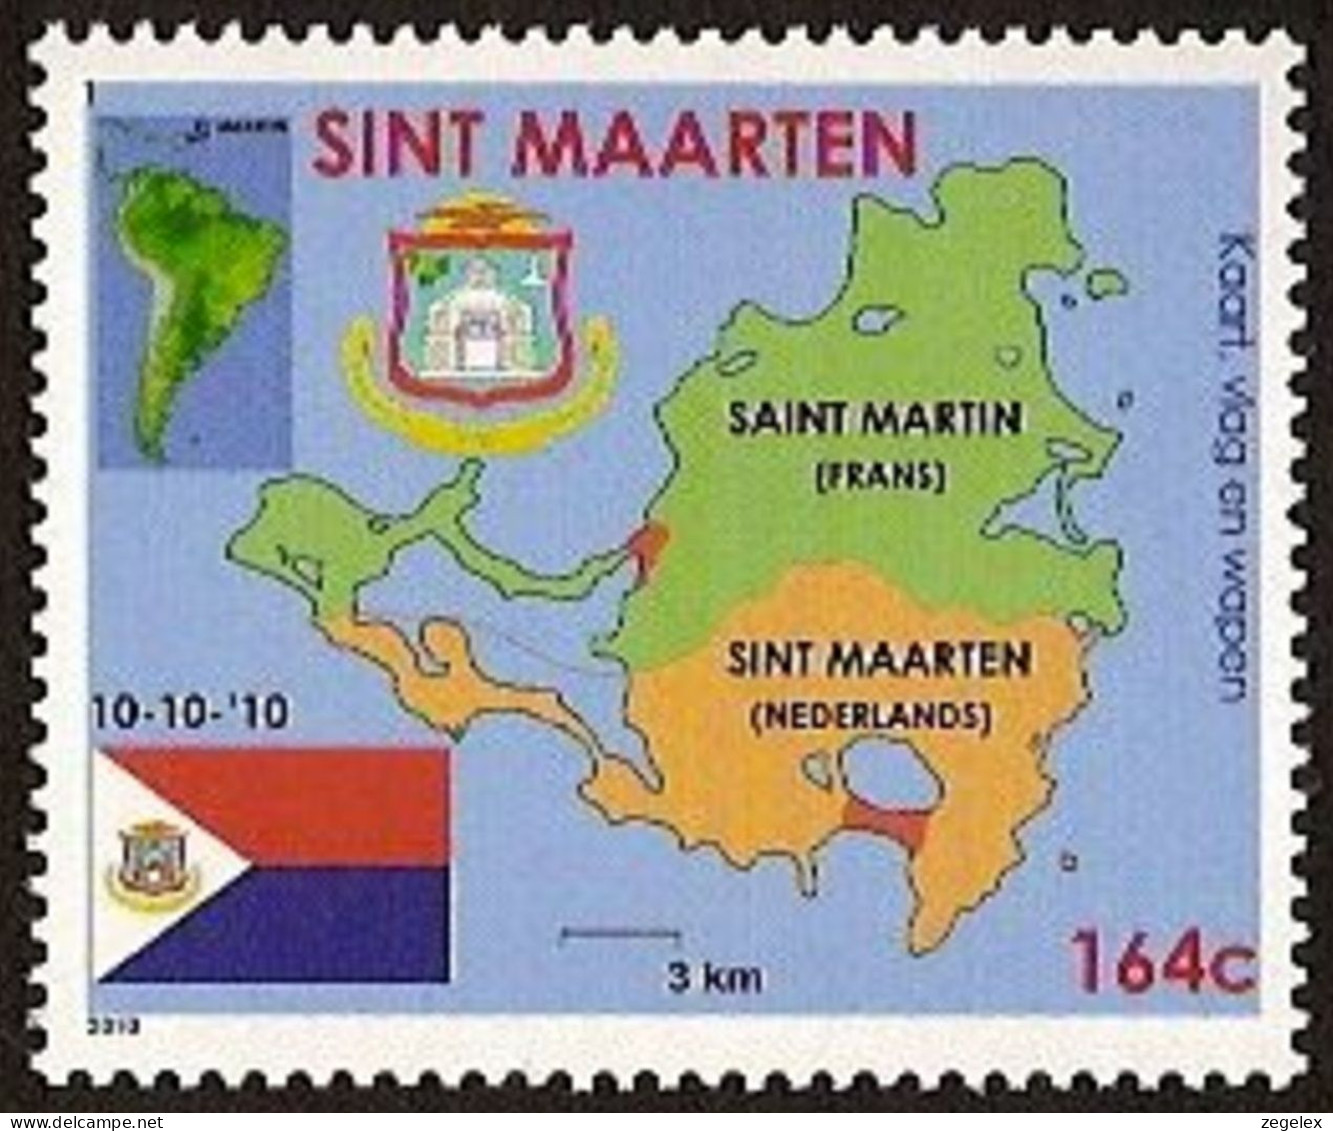 Sint Maarten 2010 Wapen, Vlag, Landkaart NVPH SM-001 MNH ** Postfrisch - Curaçao, Antille Olandesi, Aruba